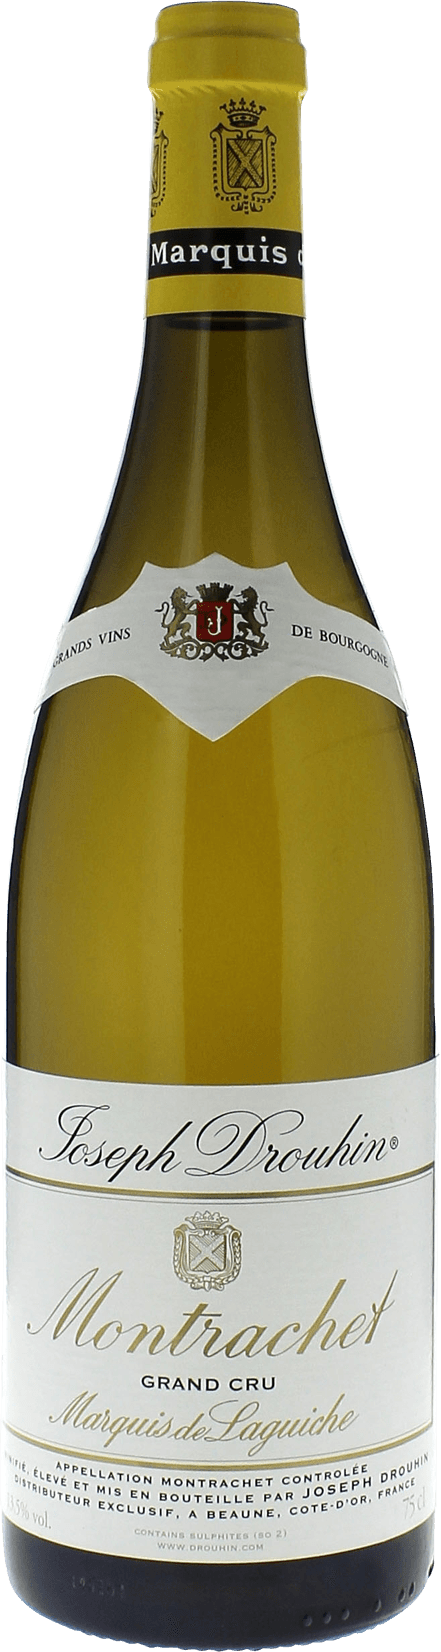 Chassagne montrachet morgeot marquis de la guiche 2017 Domaine Joseph DROUHIN, Bourgogne blanc